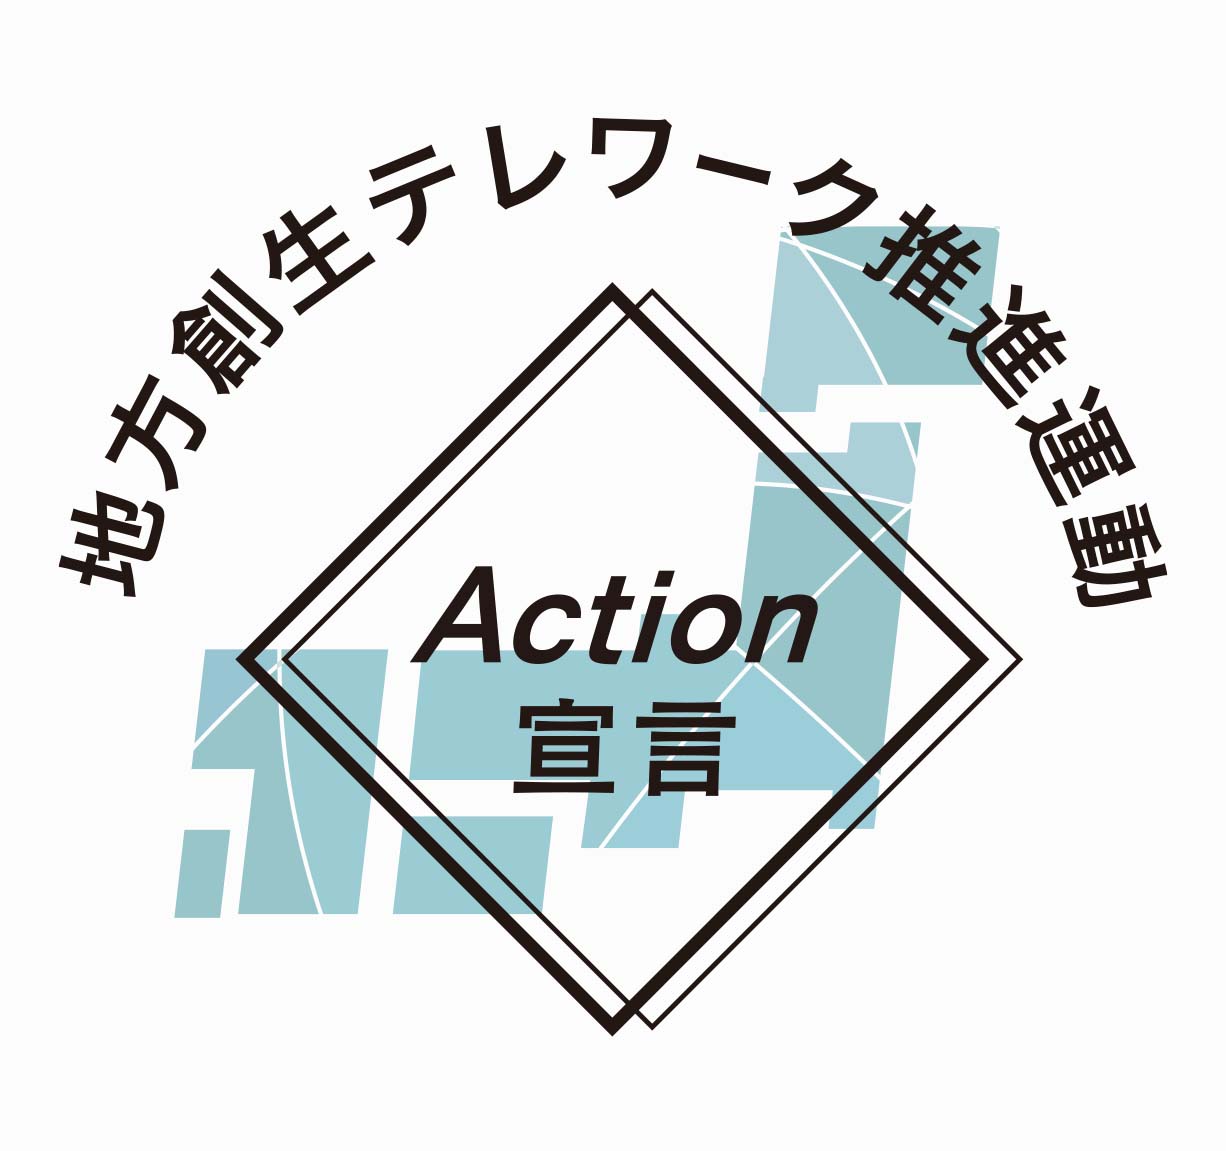 地方創生テレワーク推進運動Action宣言ロゴ